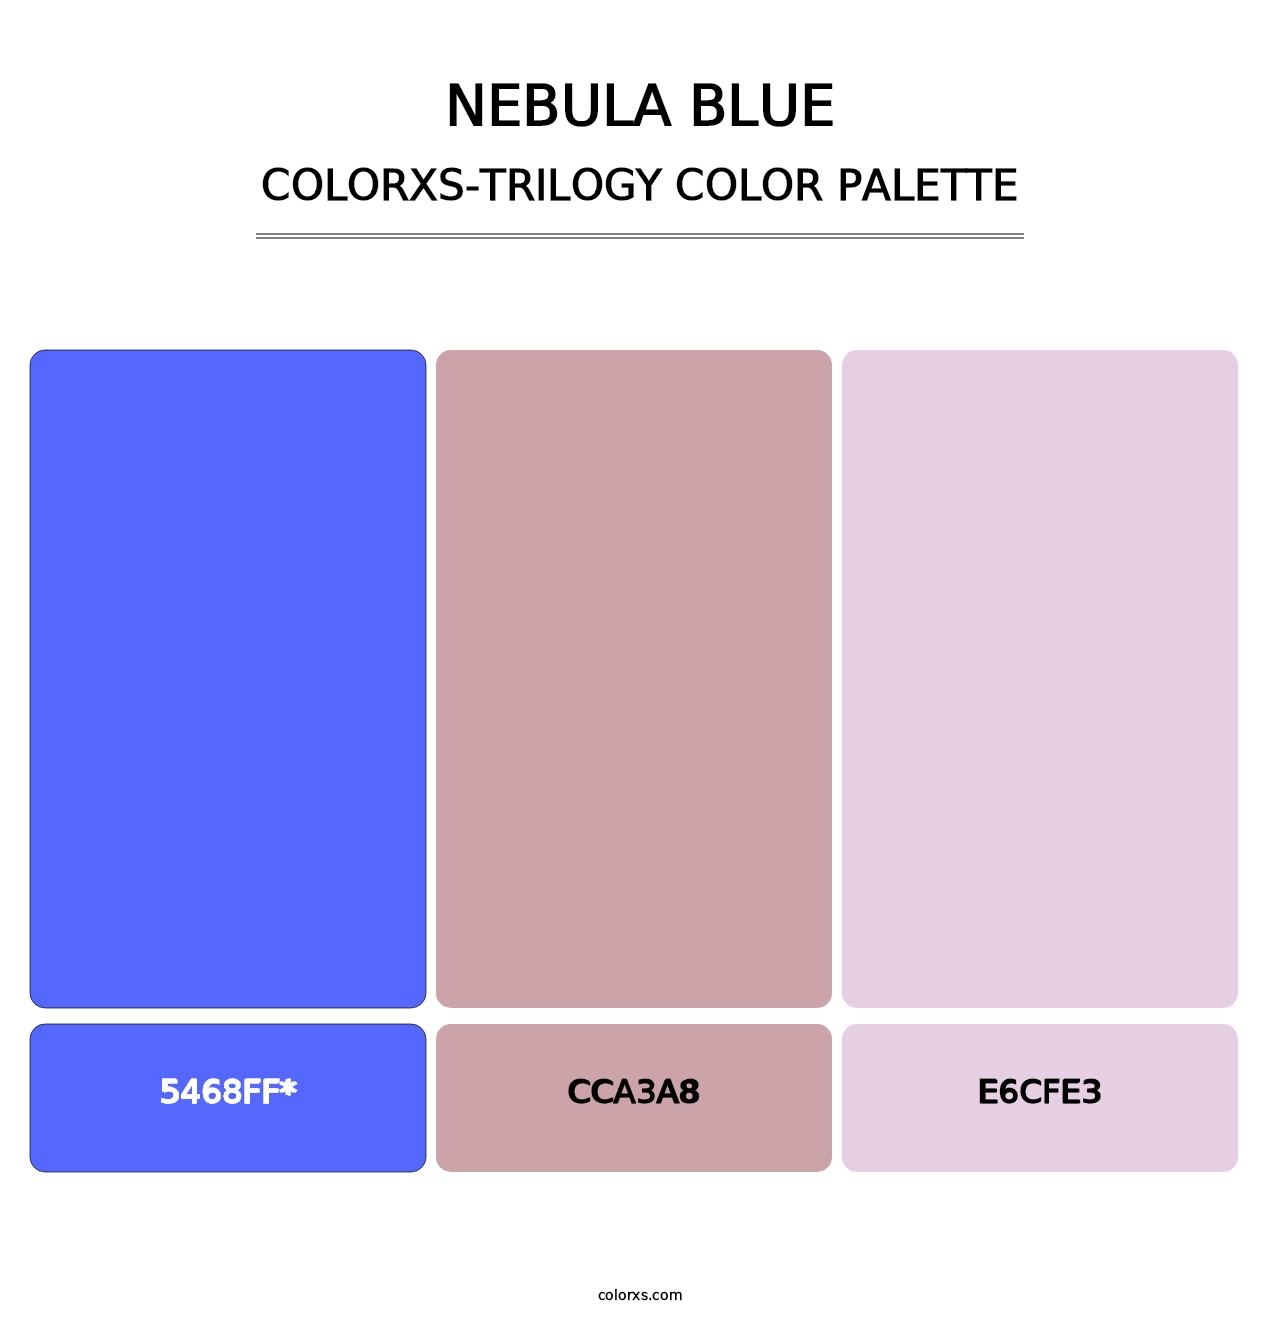 Nebula Blue - Colorxs Trilogy Palette